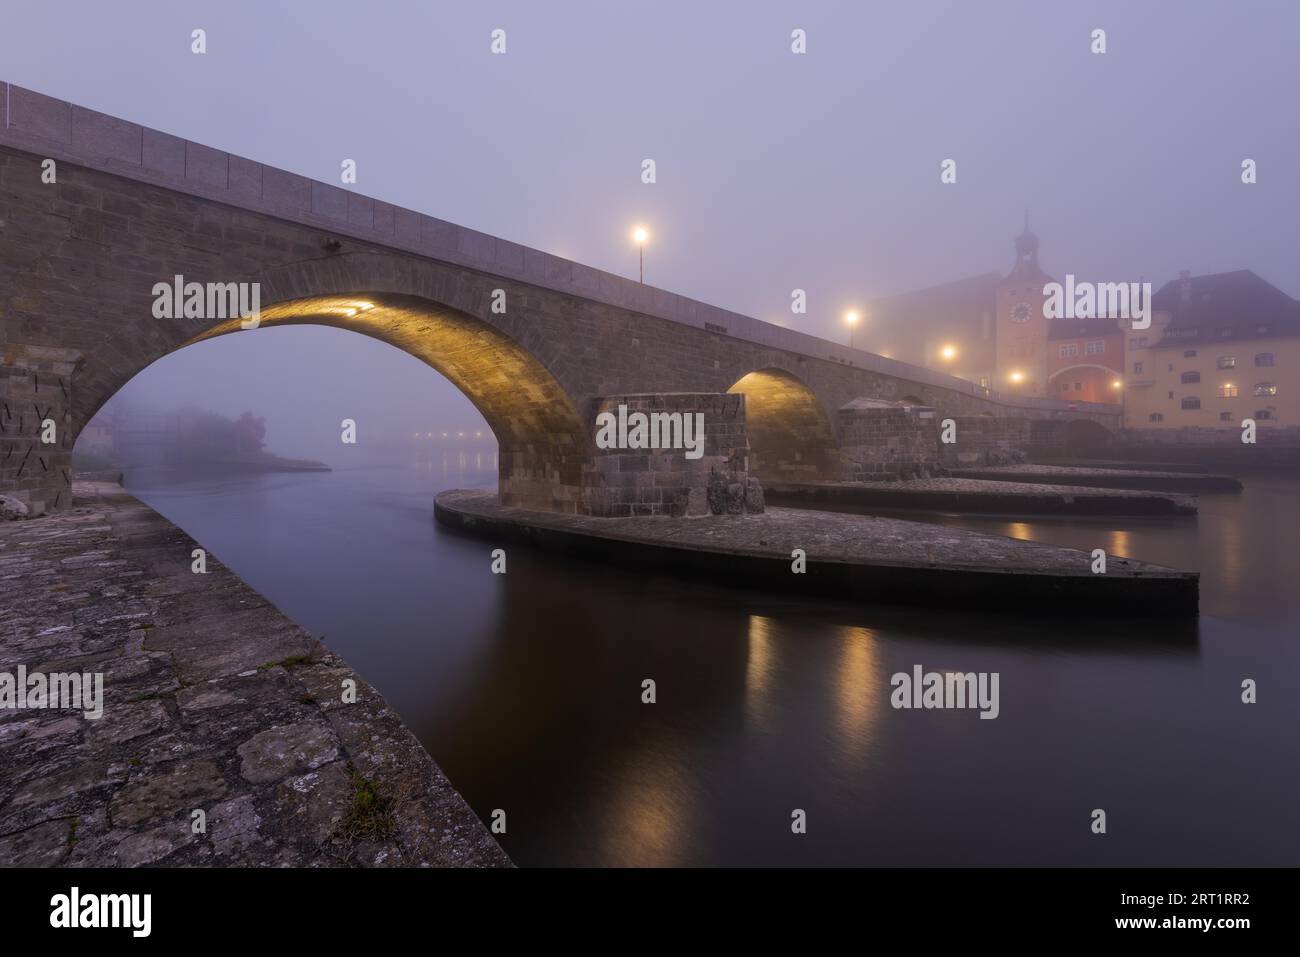 Le pont de pierre dans la ville bavaroise de Ratisbonne avant l'aube couvert d'un épais brouillard d'automne Banque D'Images